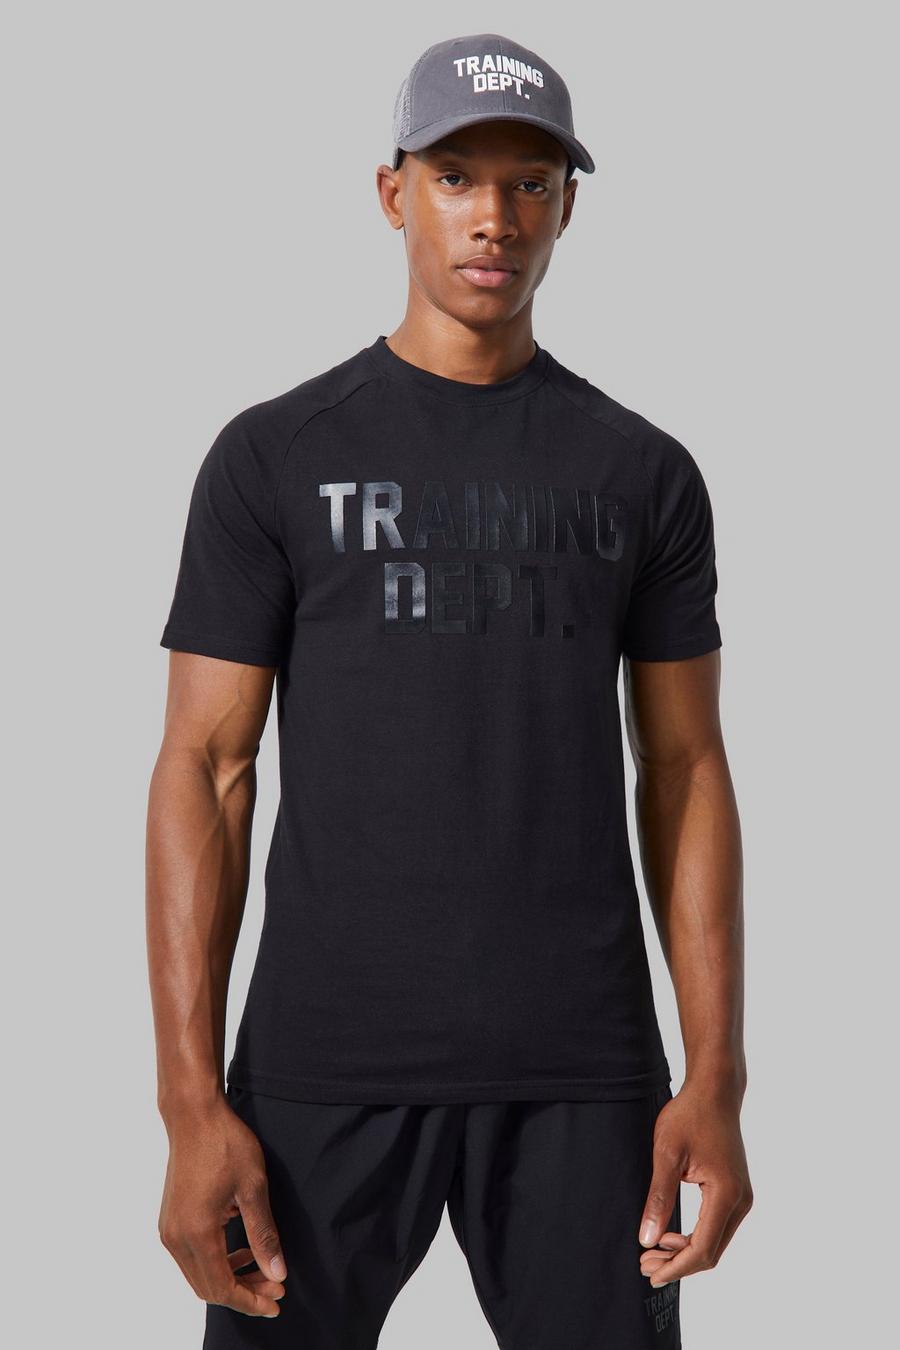 T-shirt attillata Man Active Training Dept, Black